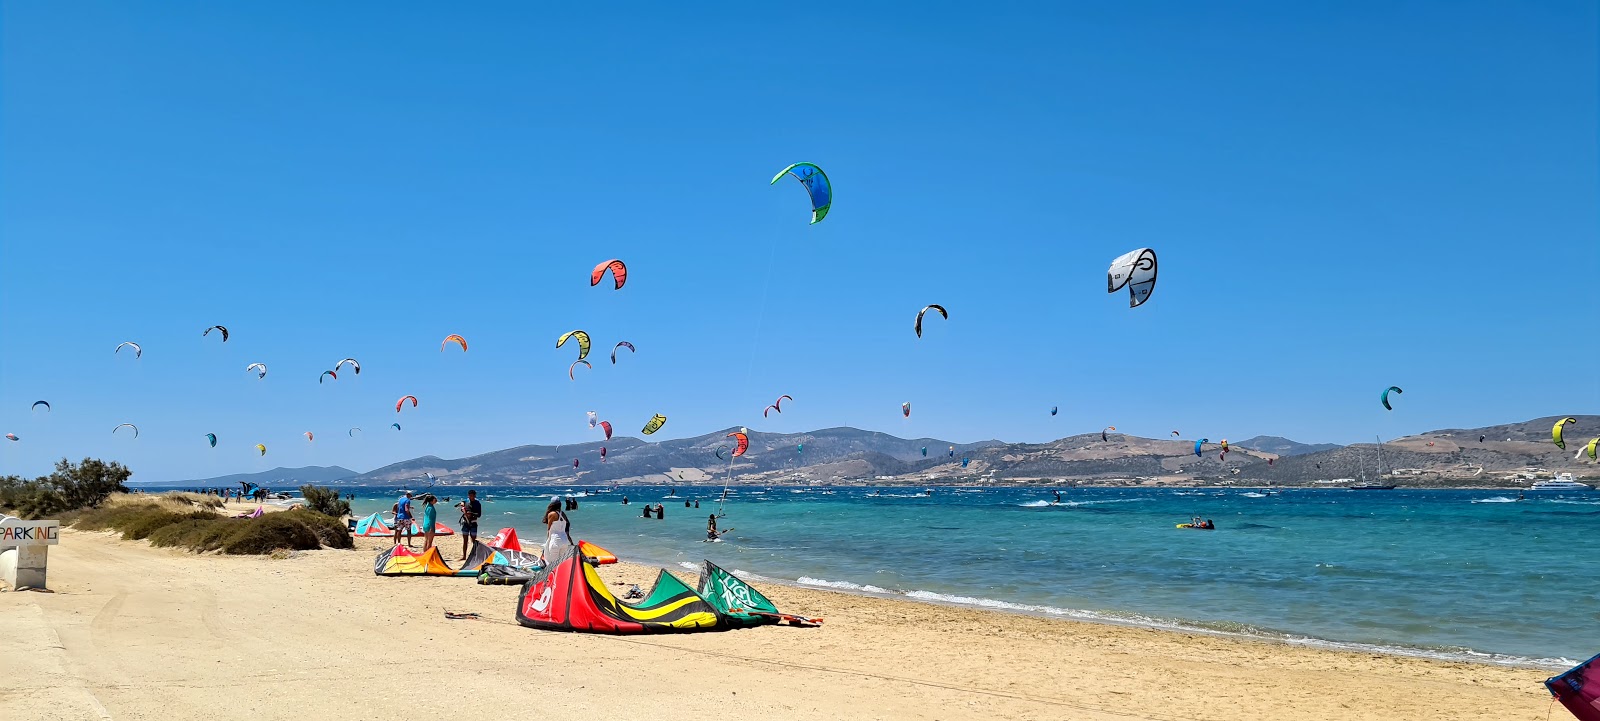 Foto de Paros Kite beach com praia espaçosa